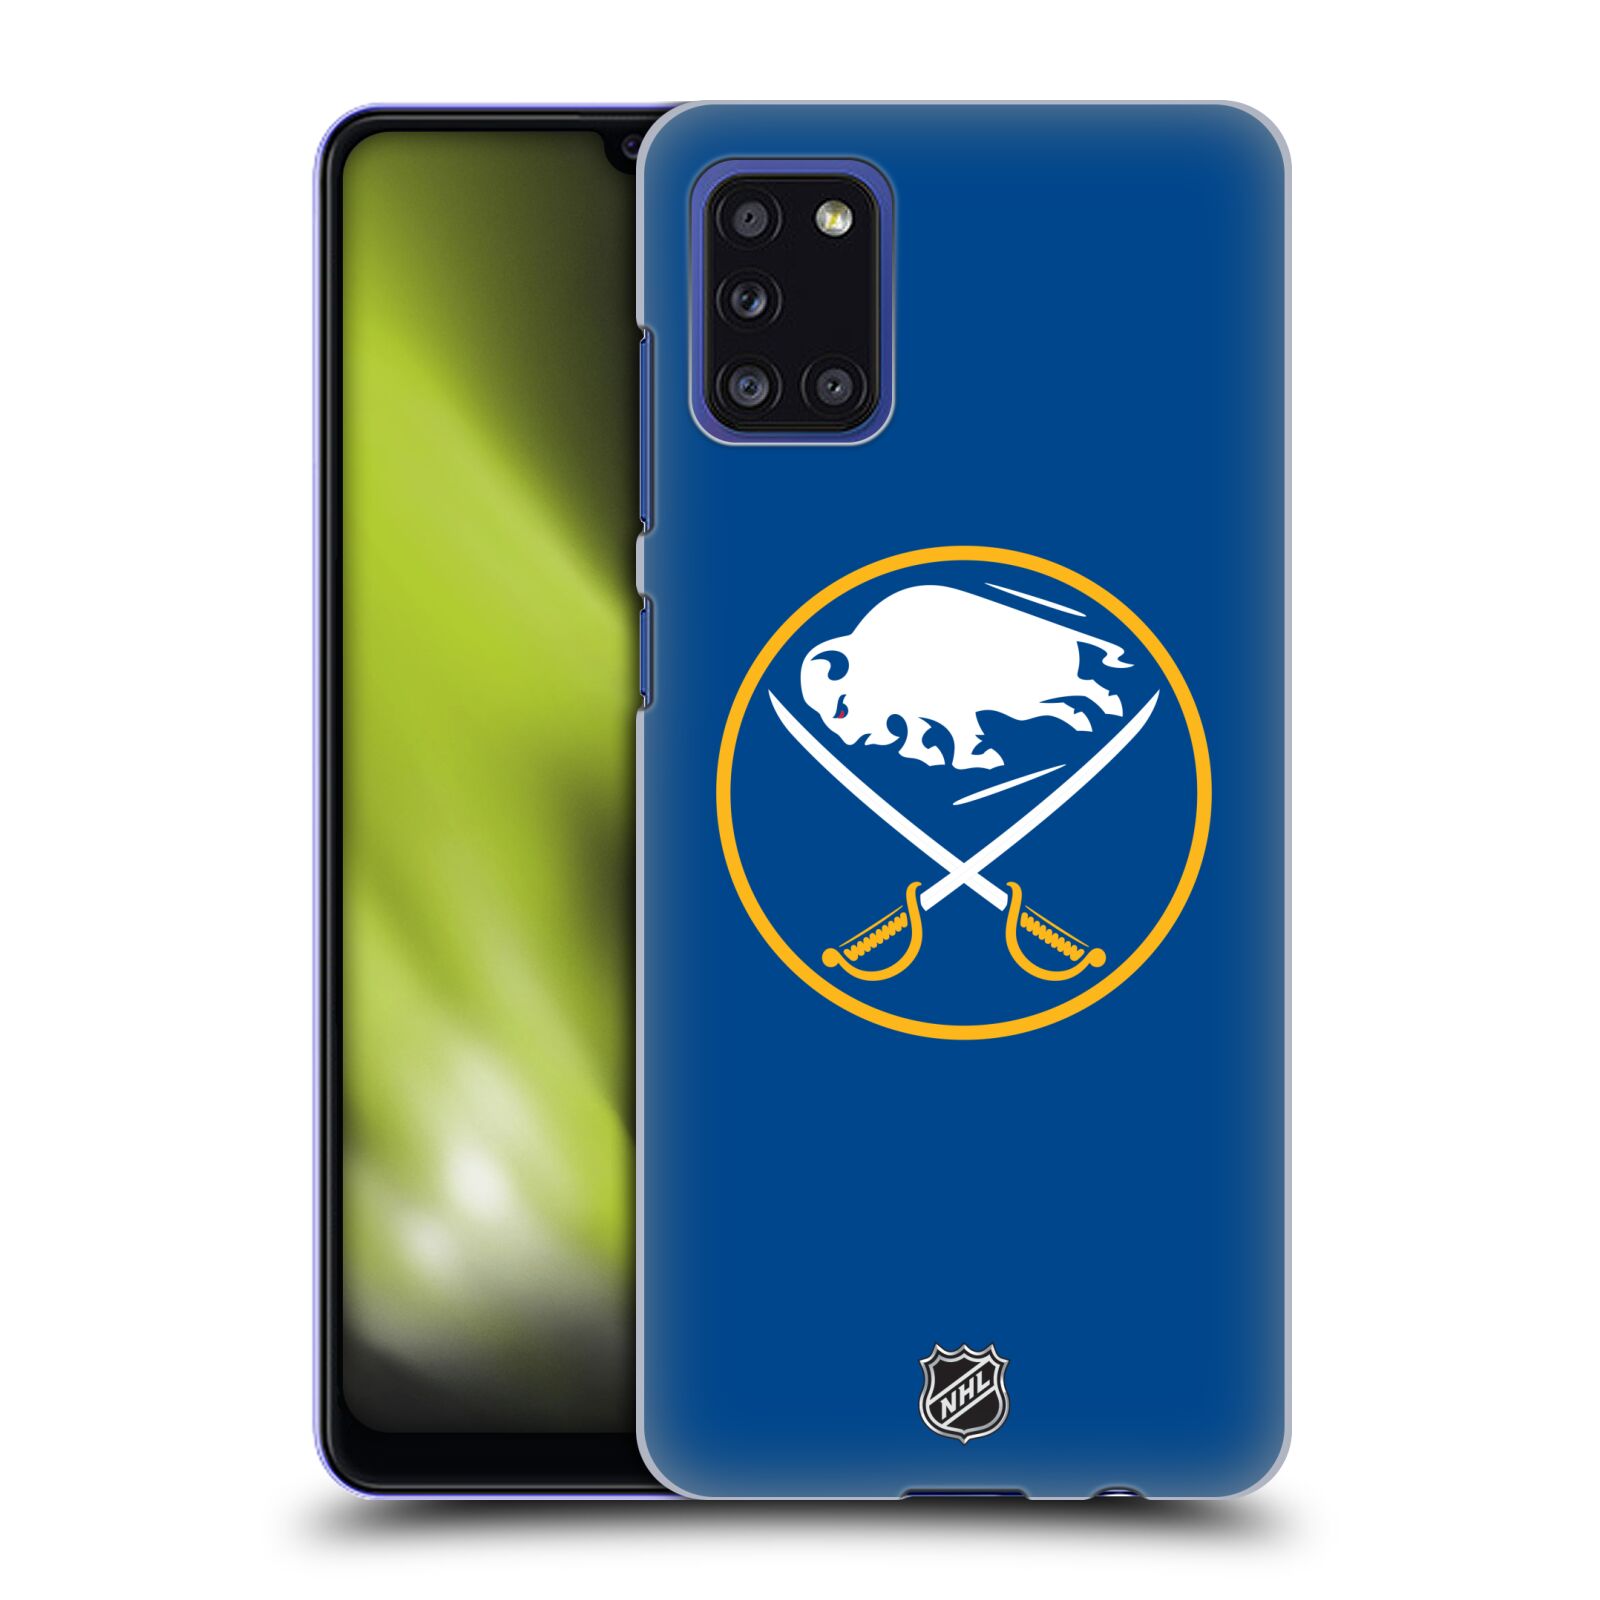 Pouzdro na mobil Samsung Galaxy A31 - HEAD CASE - Hokej NHL - Buffalo Sabres - modré pozadí